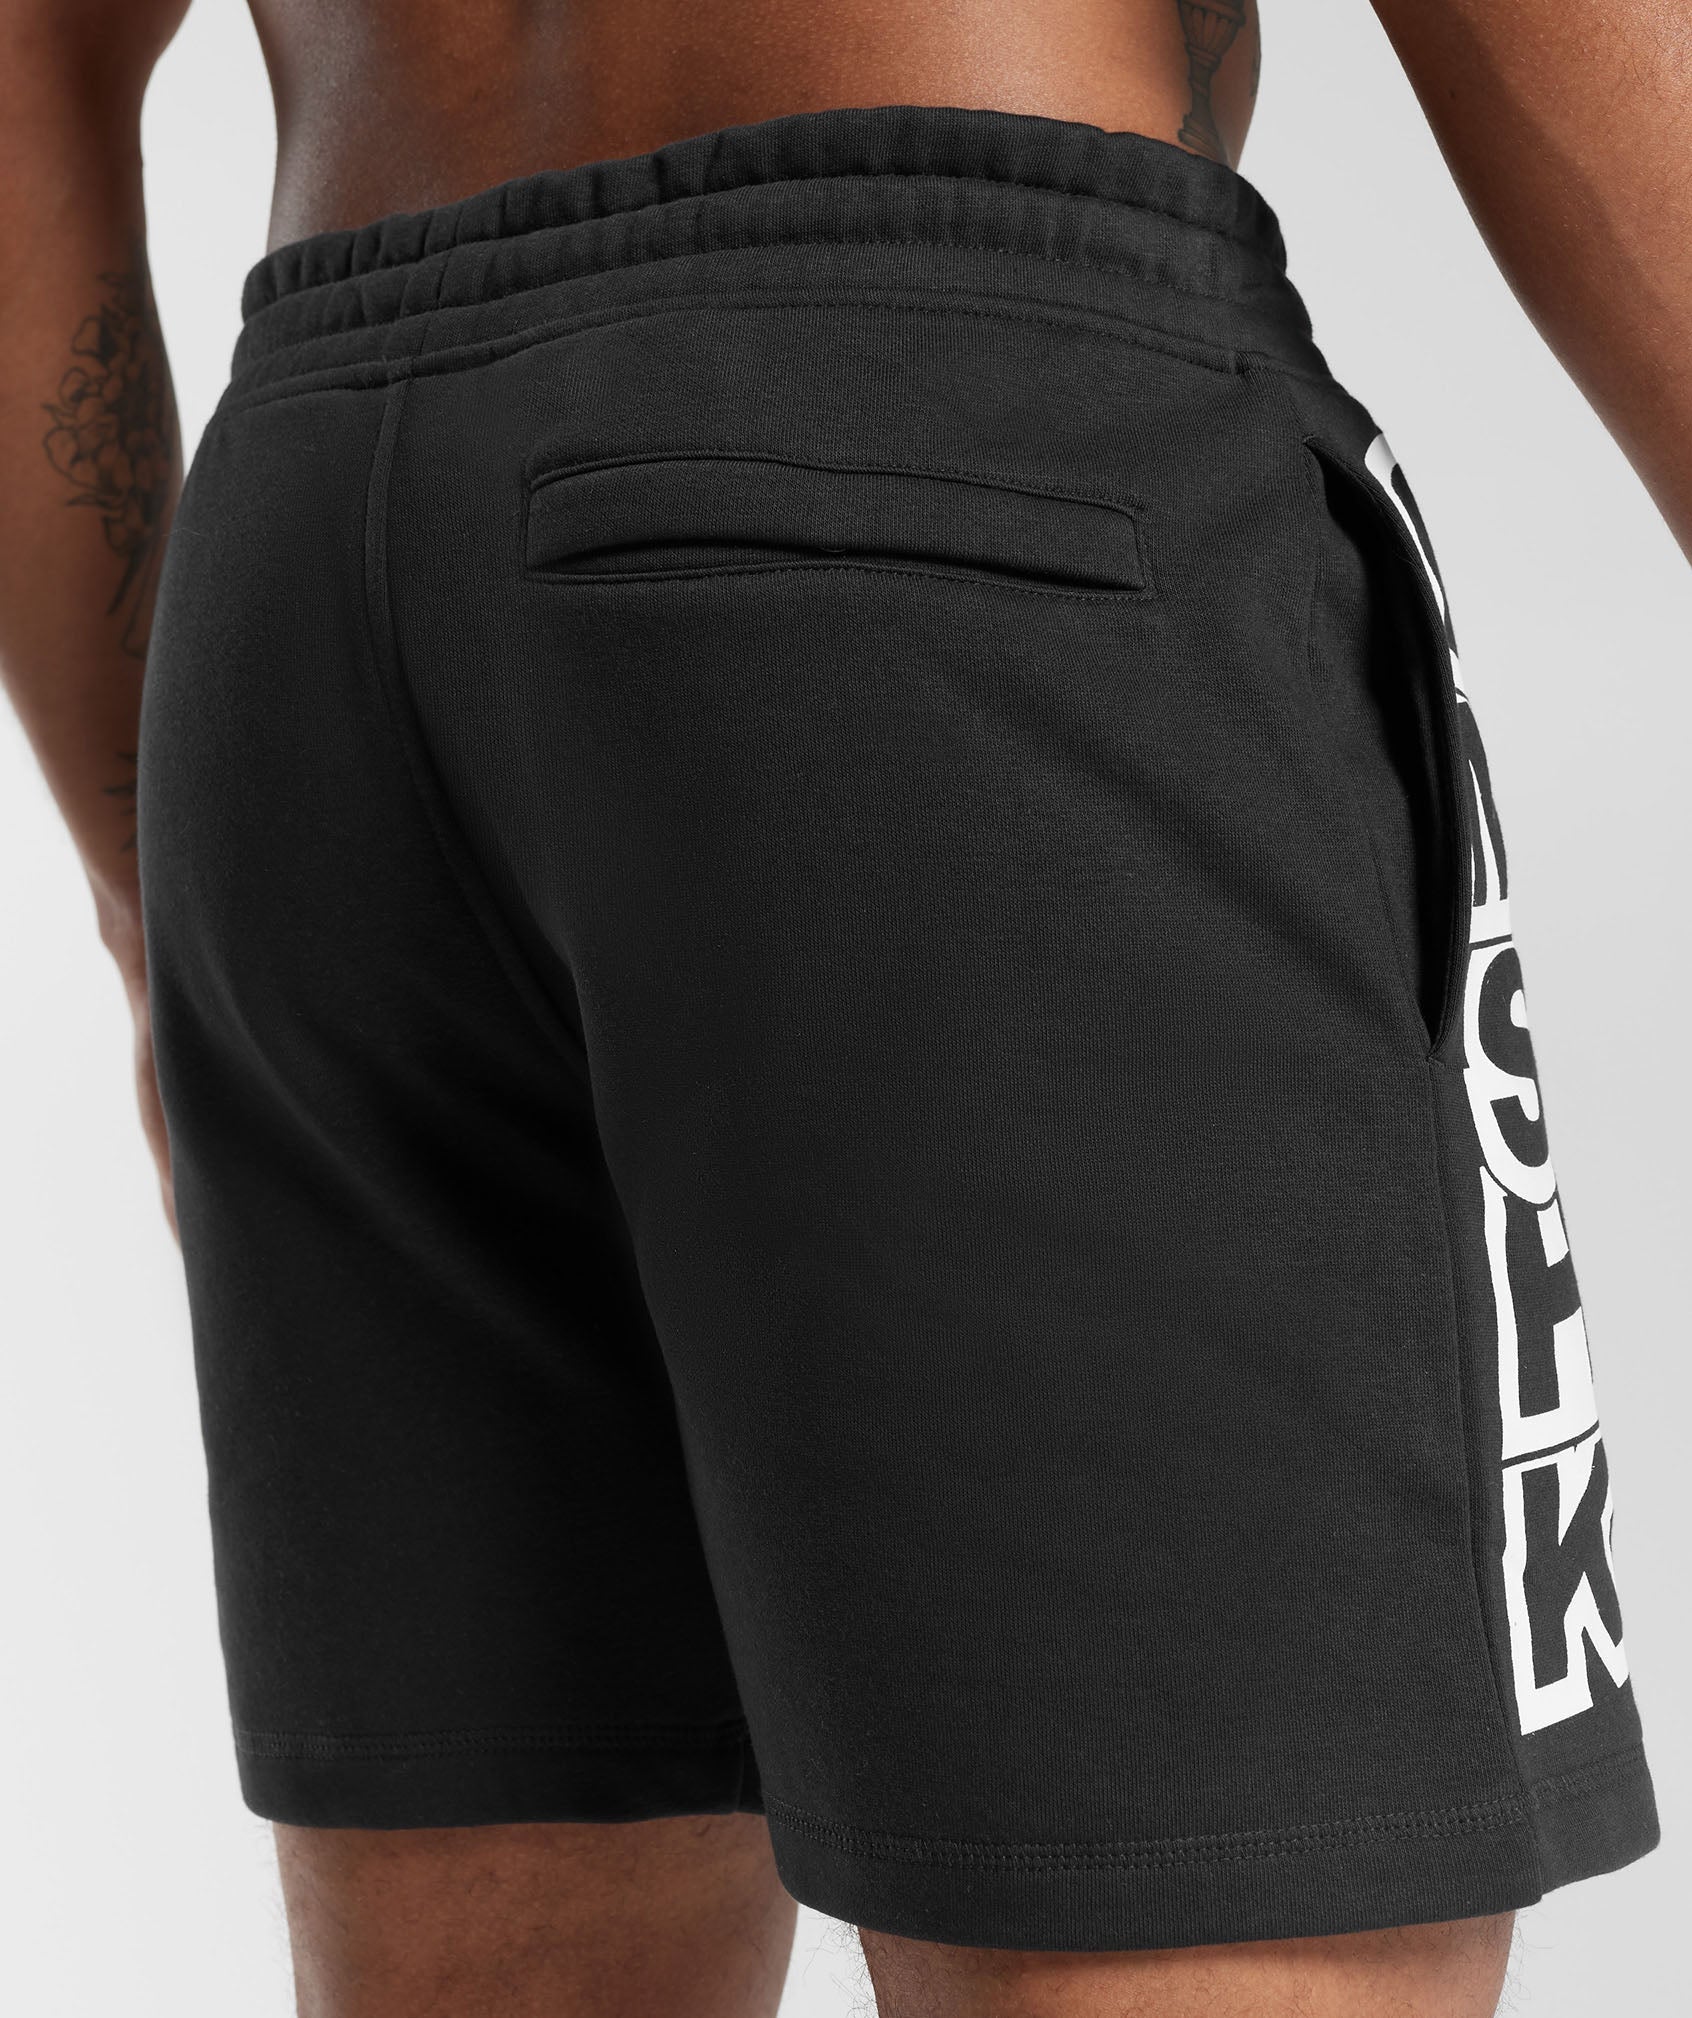 GMSHK Shorts in Black - view 6